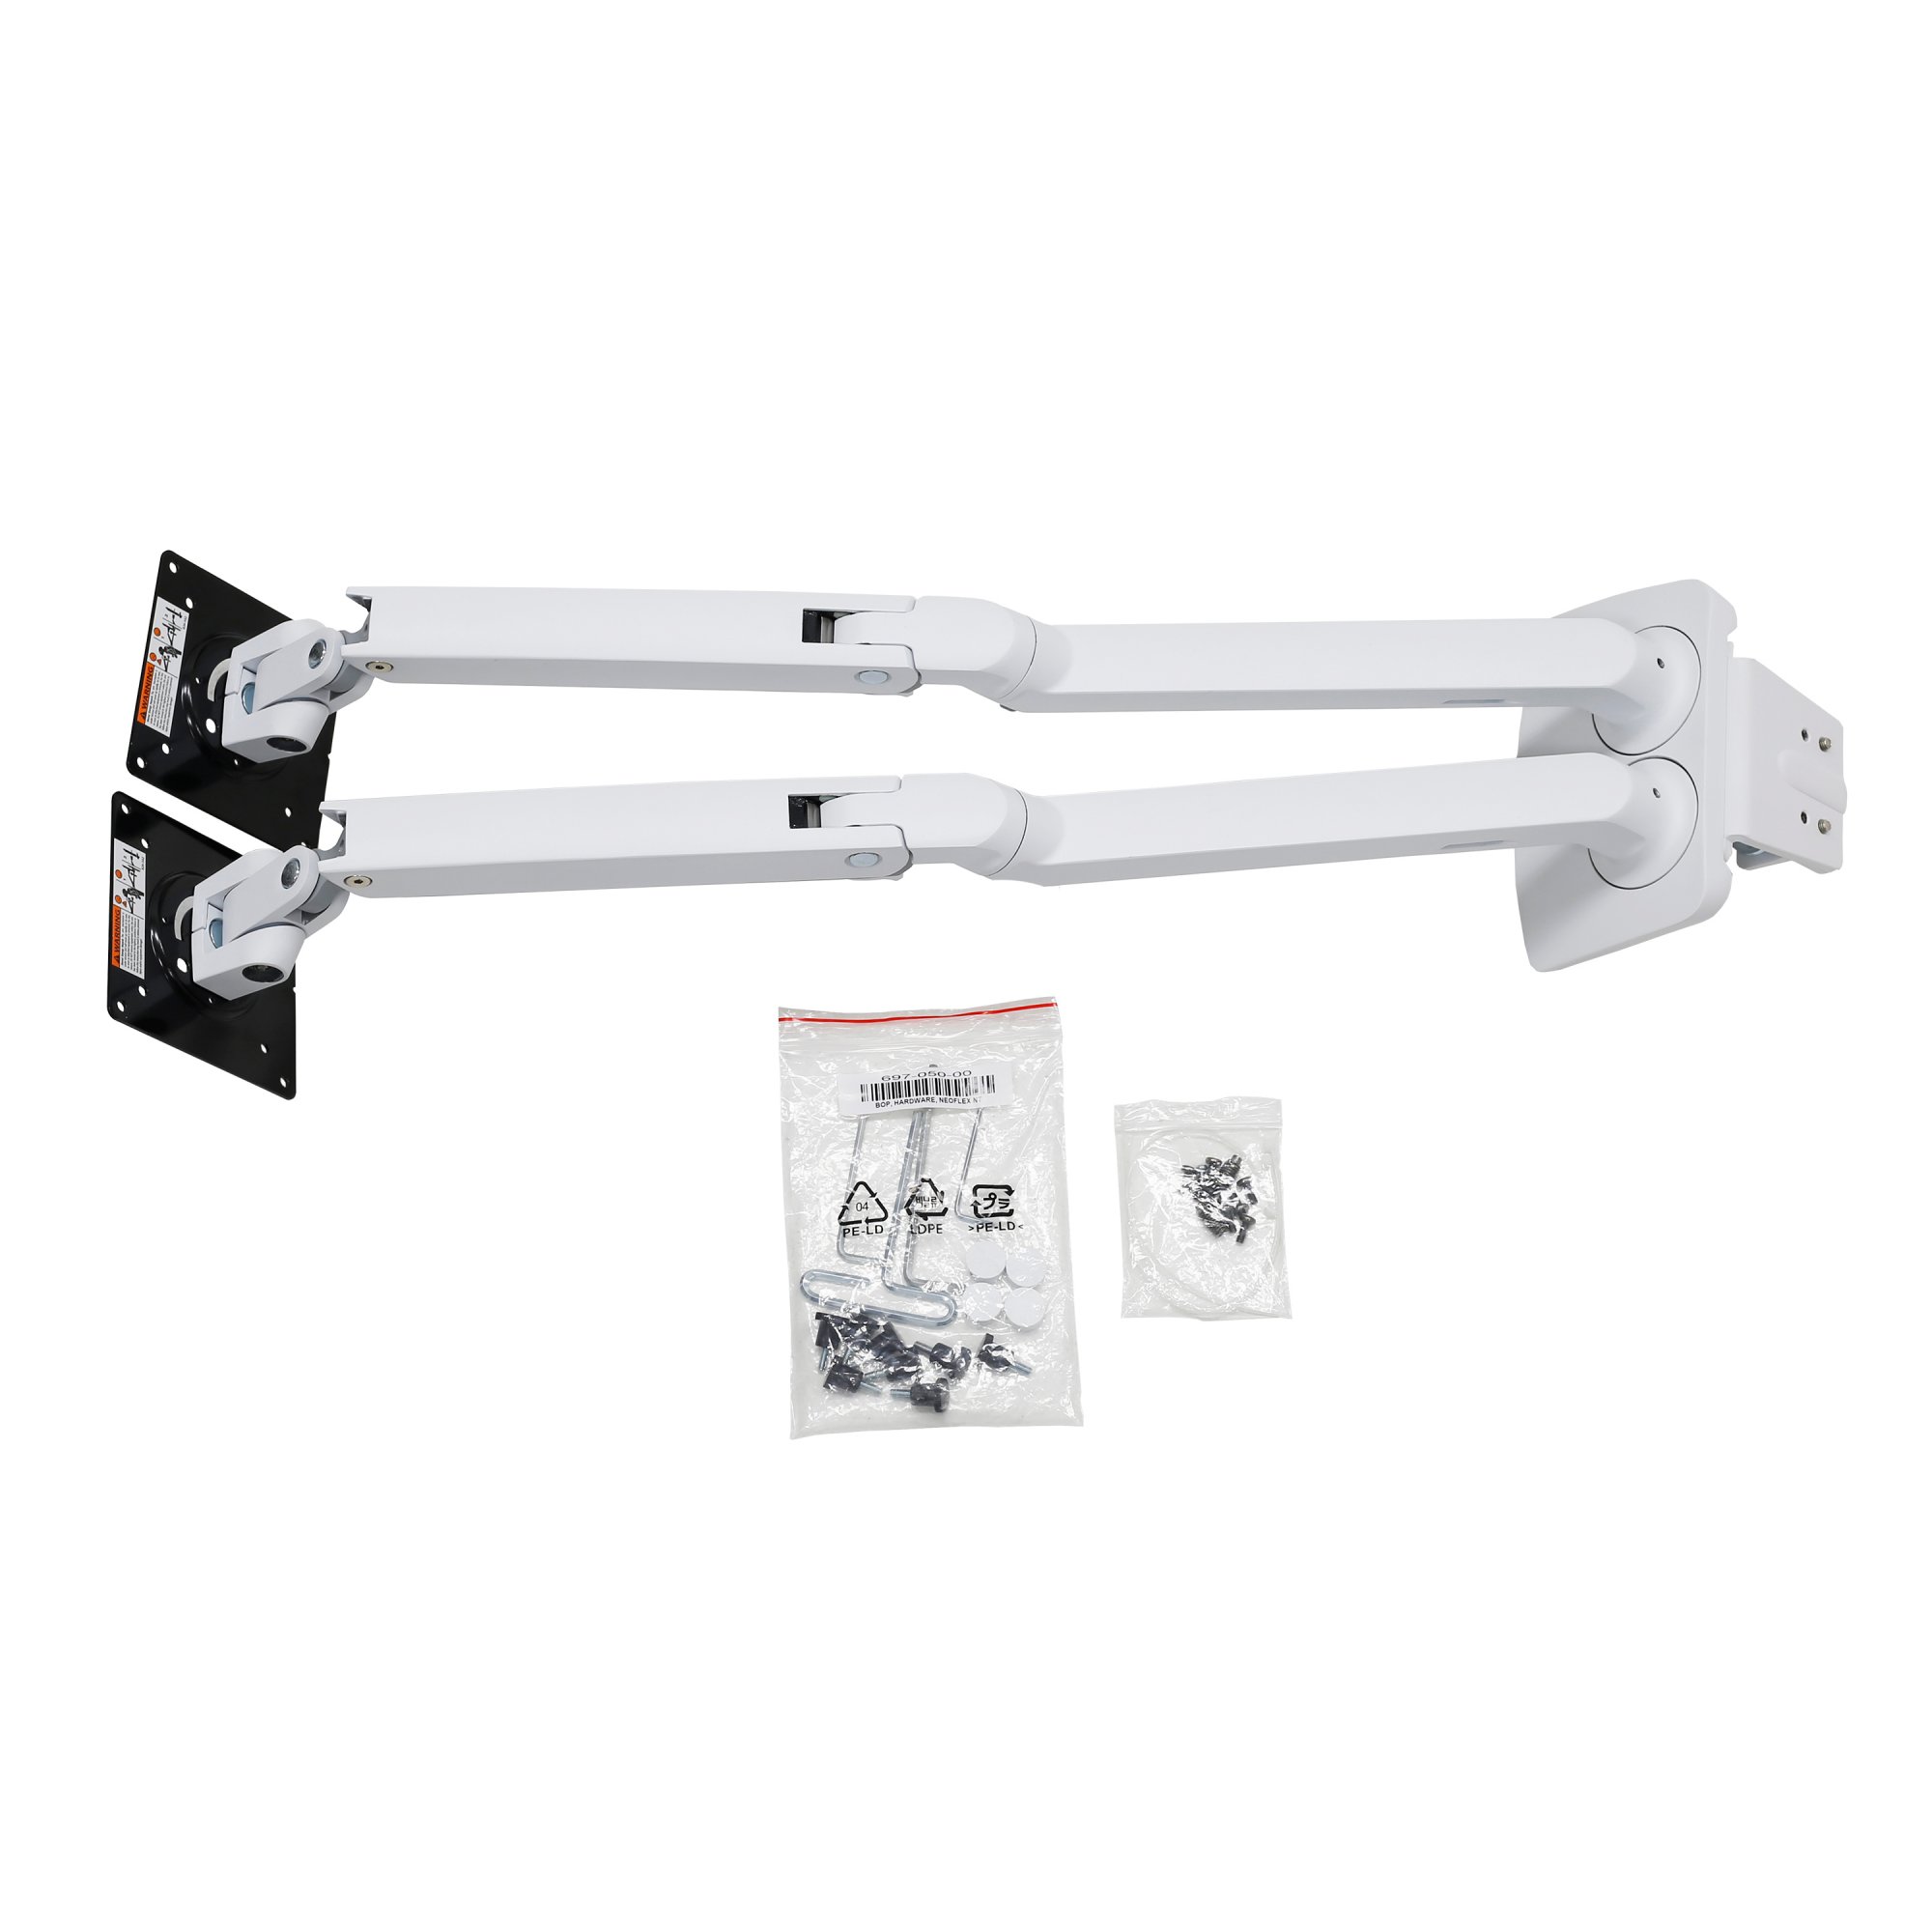 Ergotron 45-496-216 MXV Desk Mount Dual LCD Monitor Arm (white)